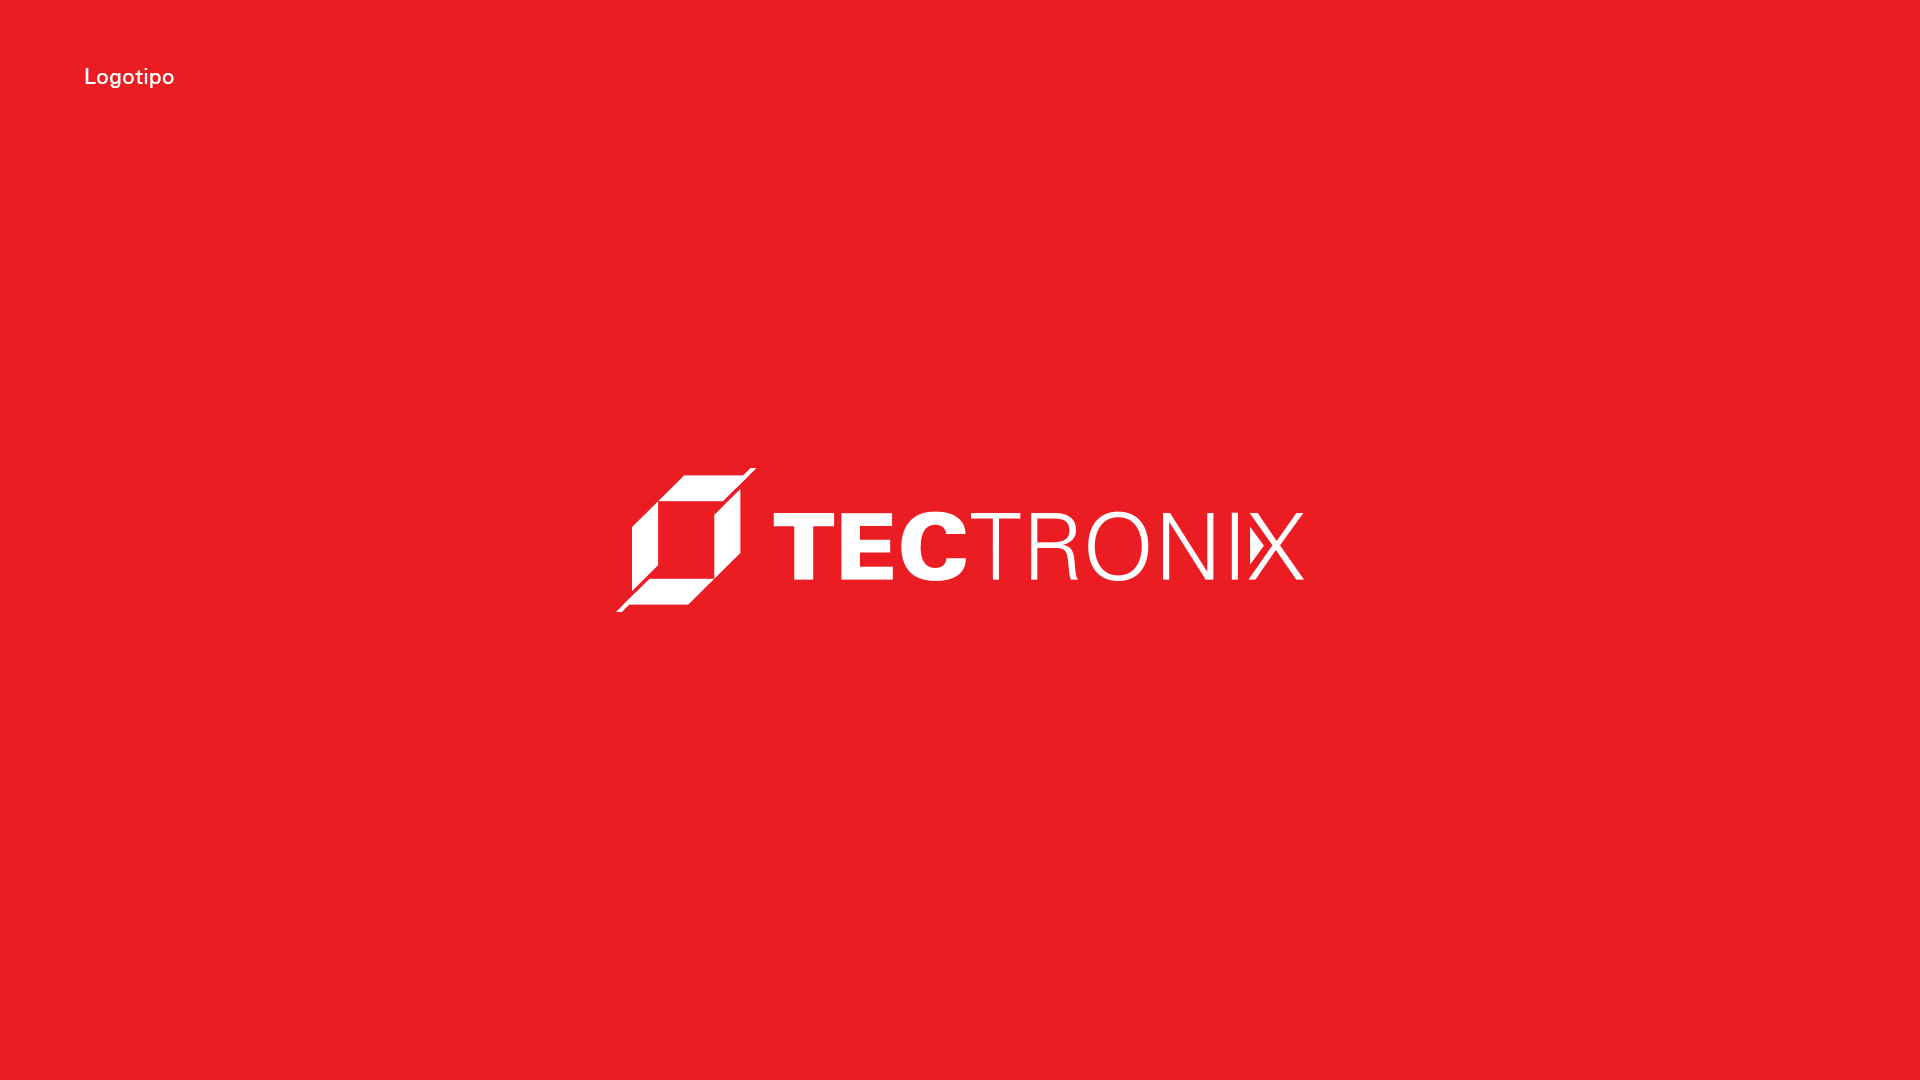 Identidad-corporativa-tectronix-logo-fondo-rojo